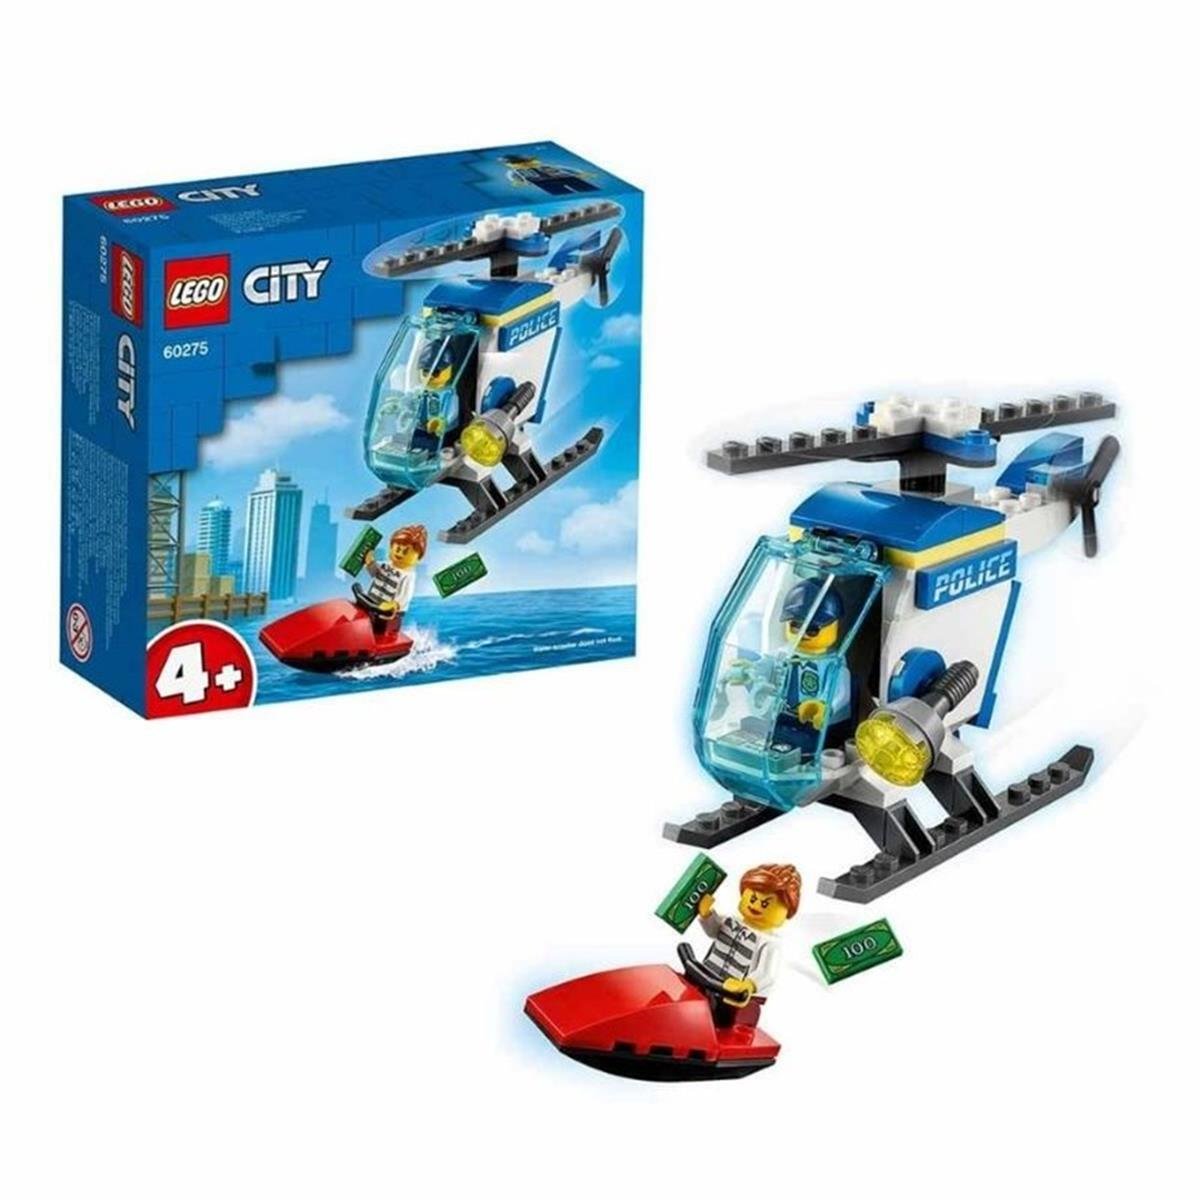 Lego City Polis Helikopteri - Oscar Eğitim Araçları